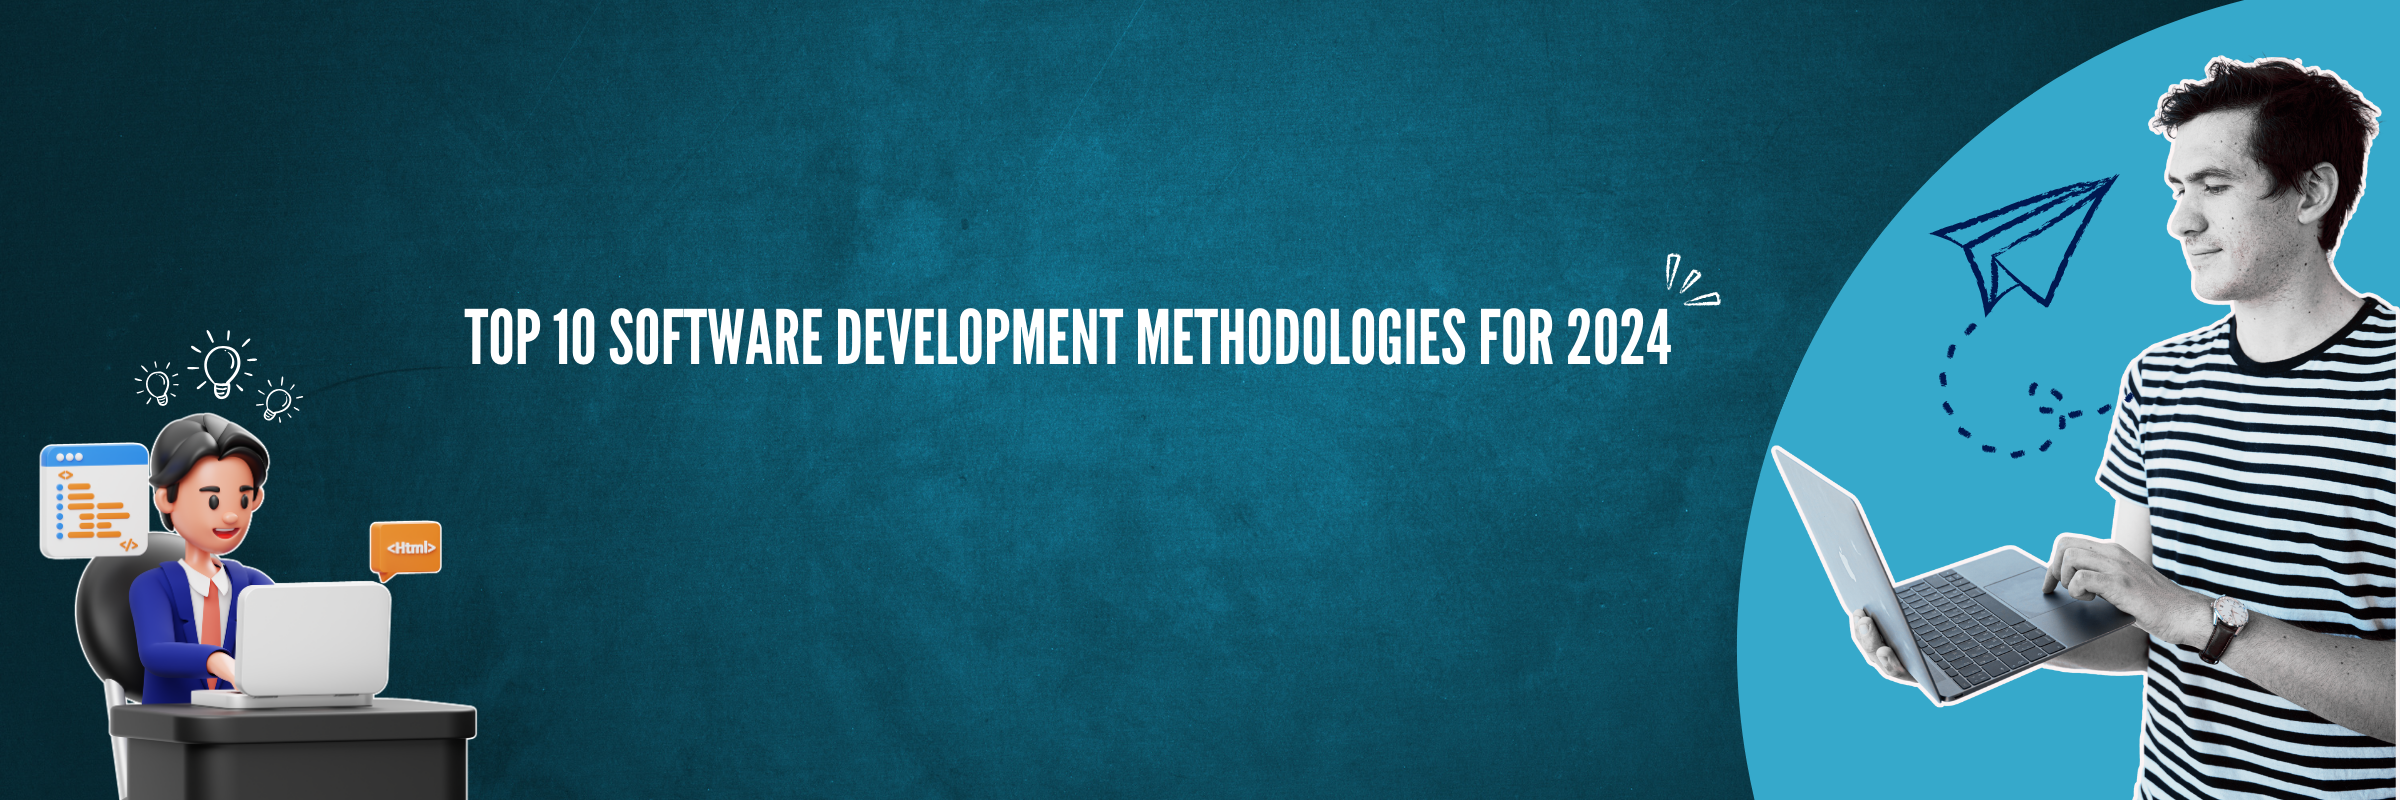 Top 10 Software Development Methodologies For 2024